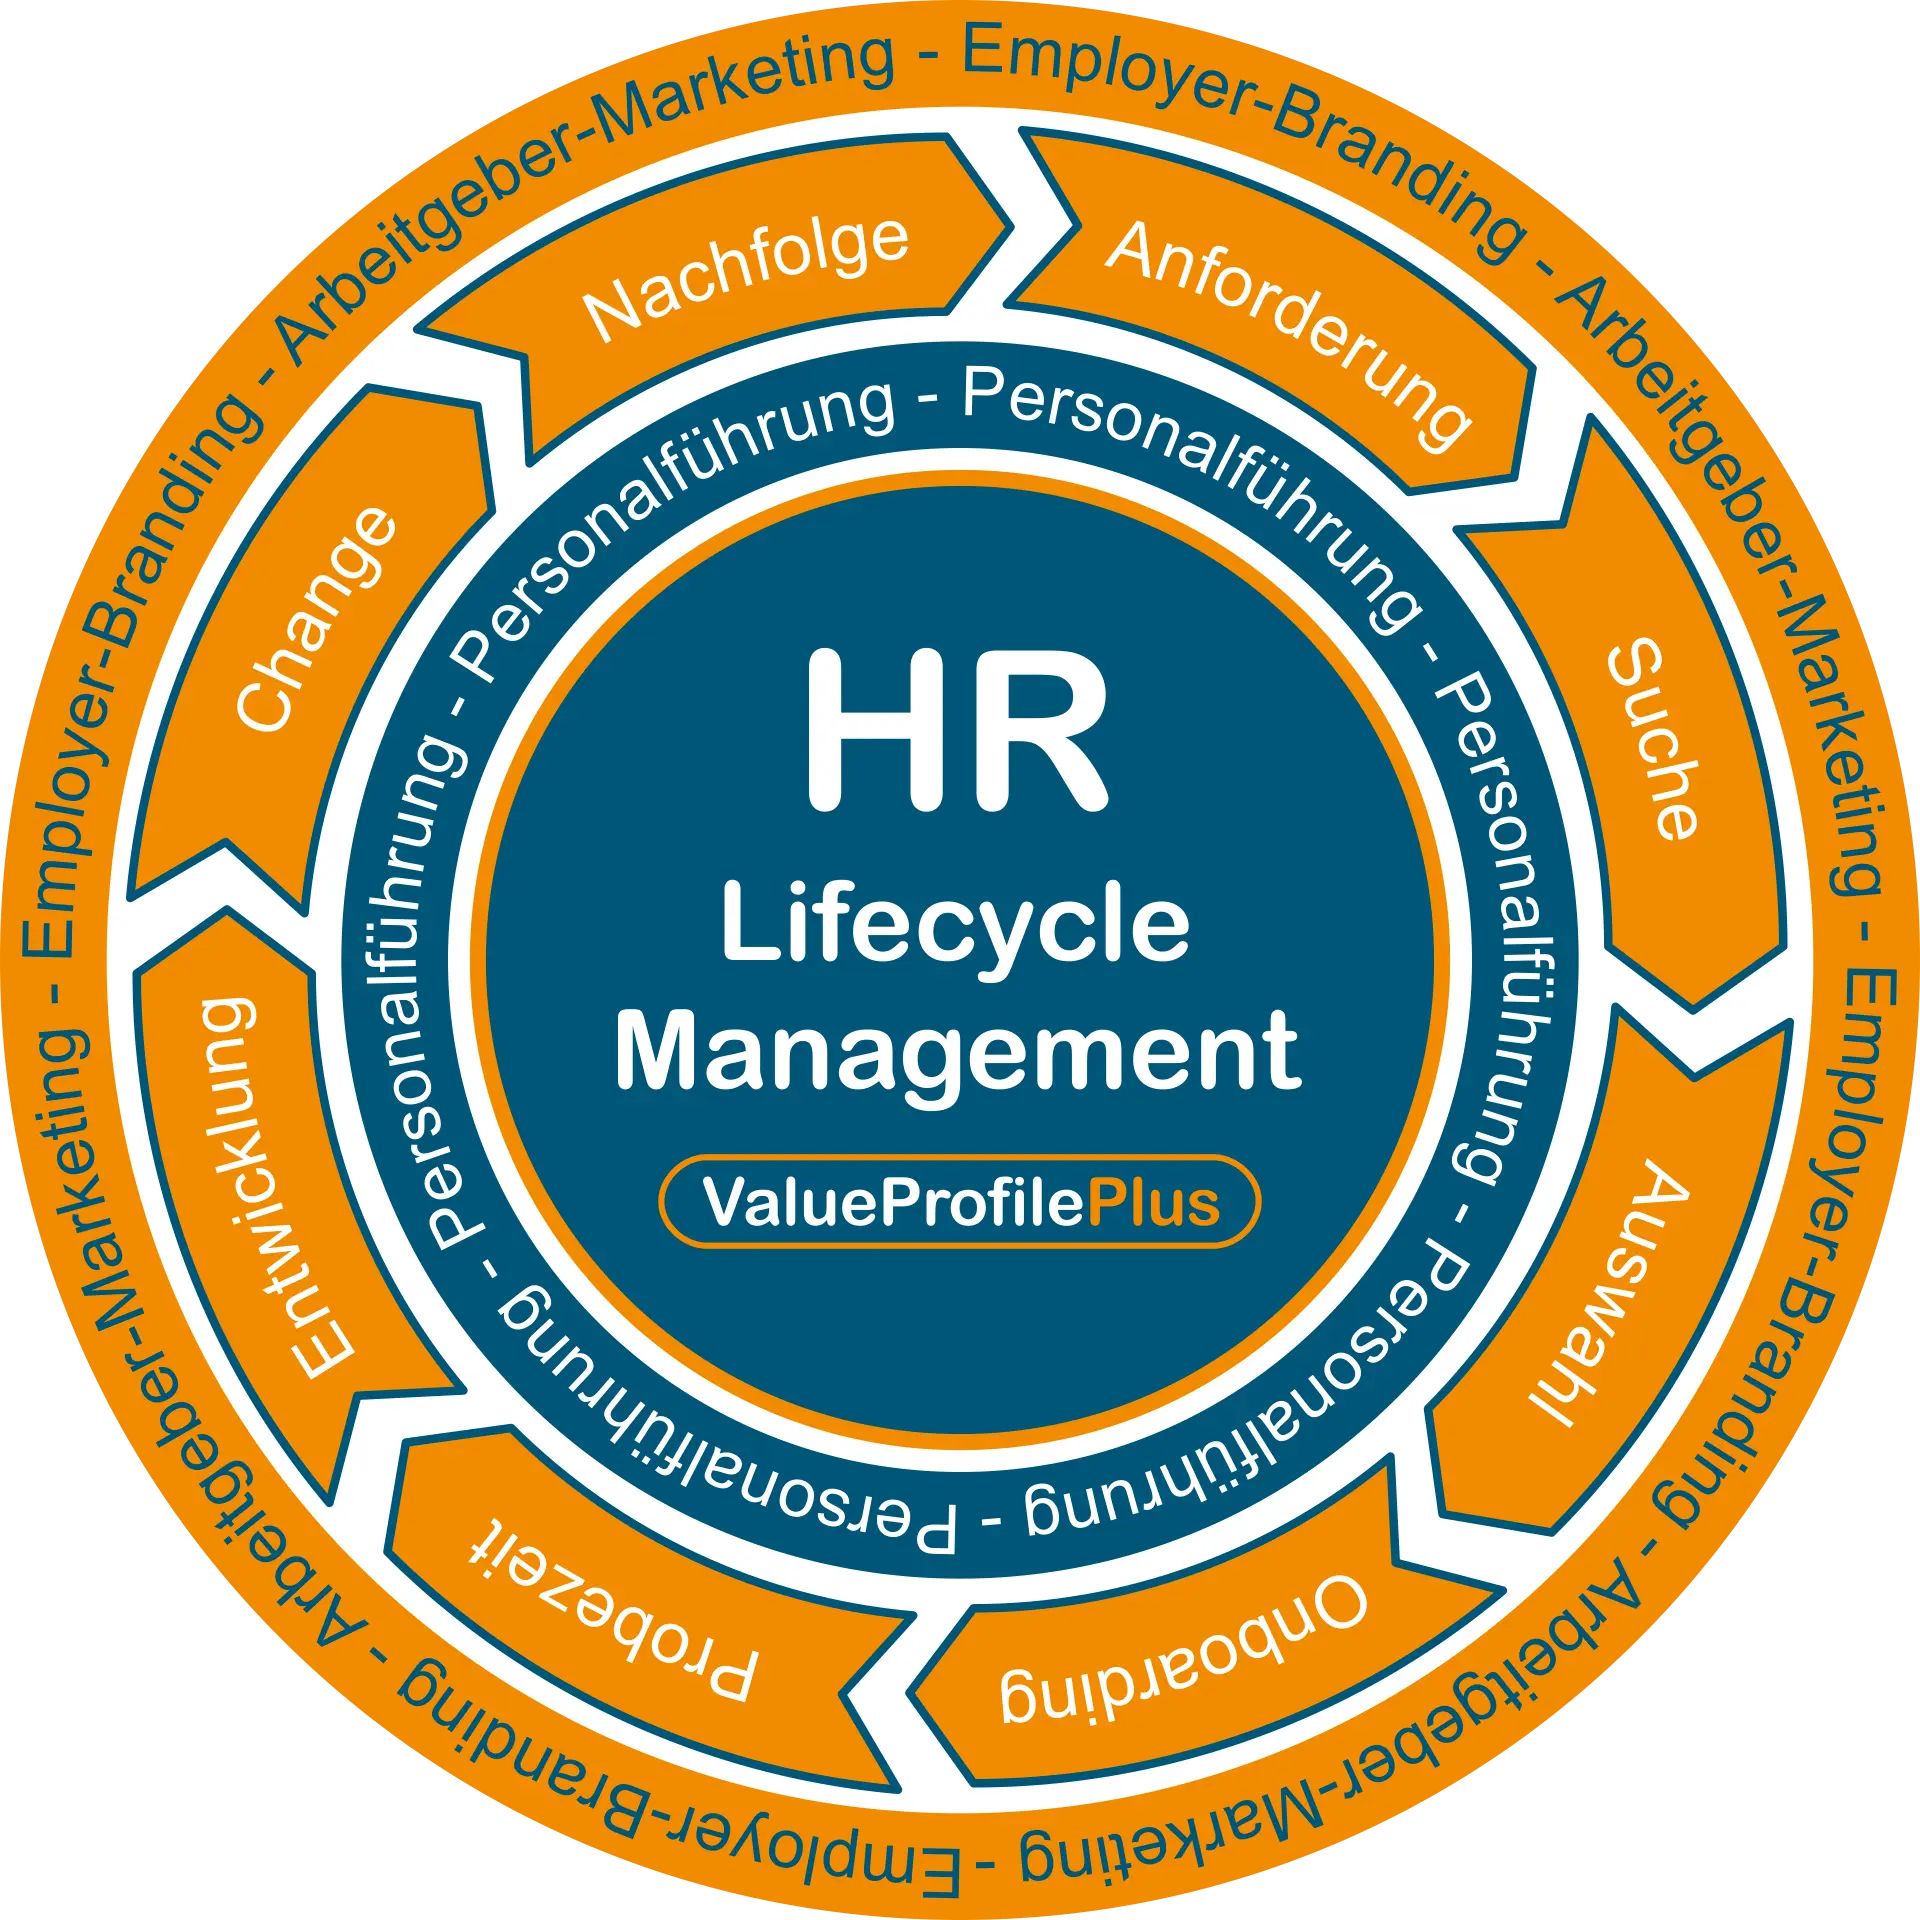 Der HR-Lifecycle mit seinen Phasen, die alle wirkungsvoll und wirtschaftlich von ValueProfilePlus unterstützt werden